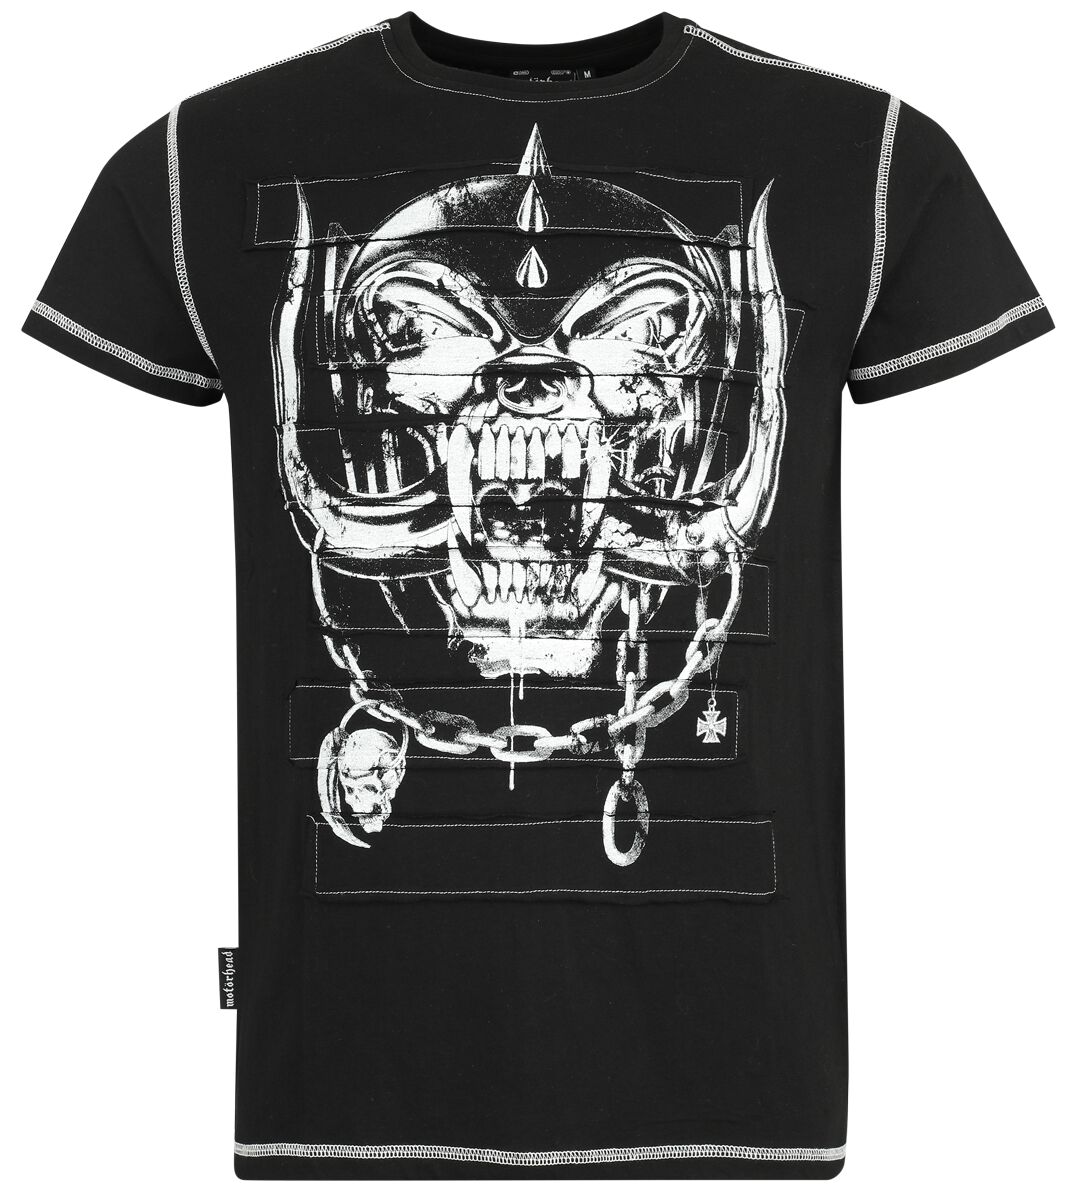 Motörhead T-Shirt - EMP Signature Collection - S bis 3XL - für Männer - Größe L - schwarz  - Lizenziertes Merchandise!